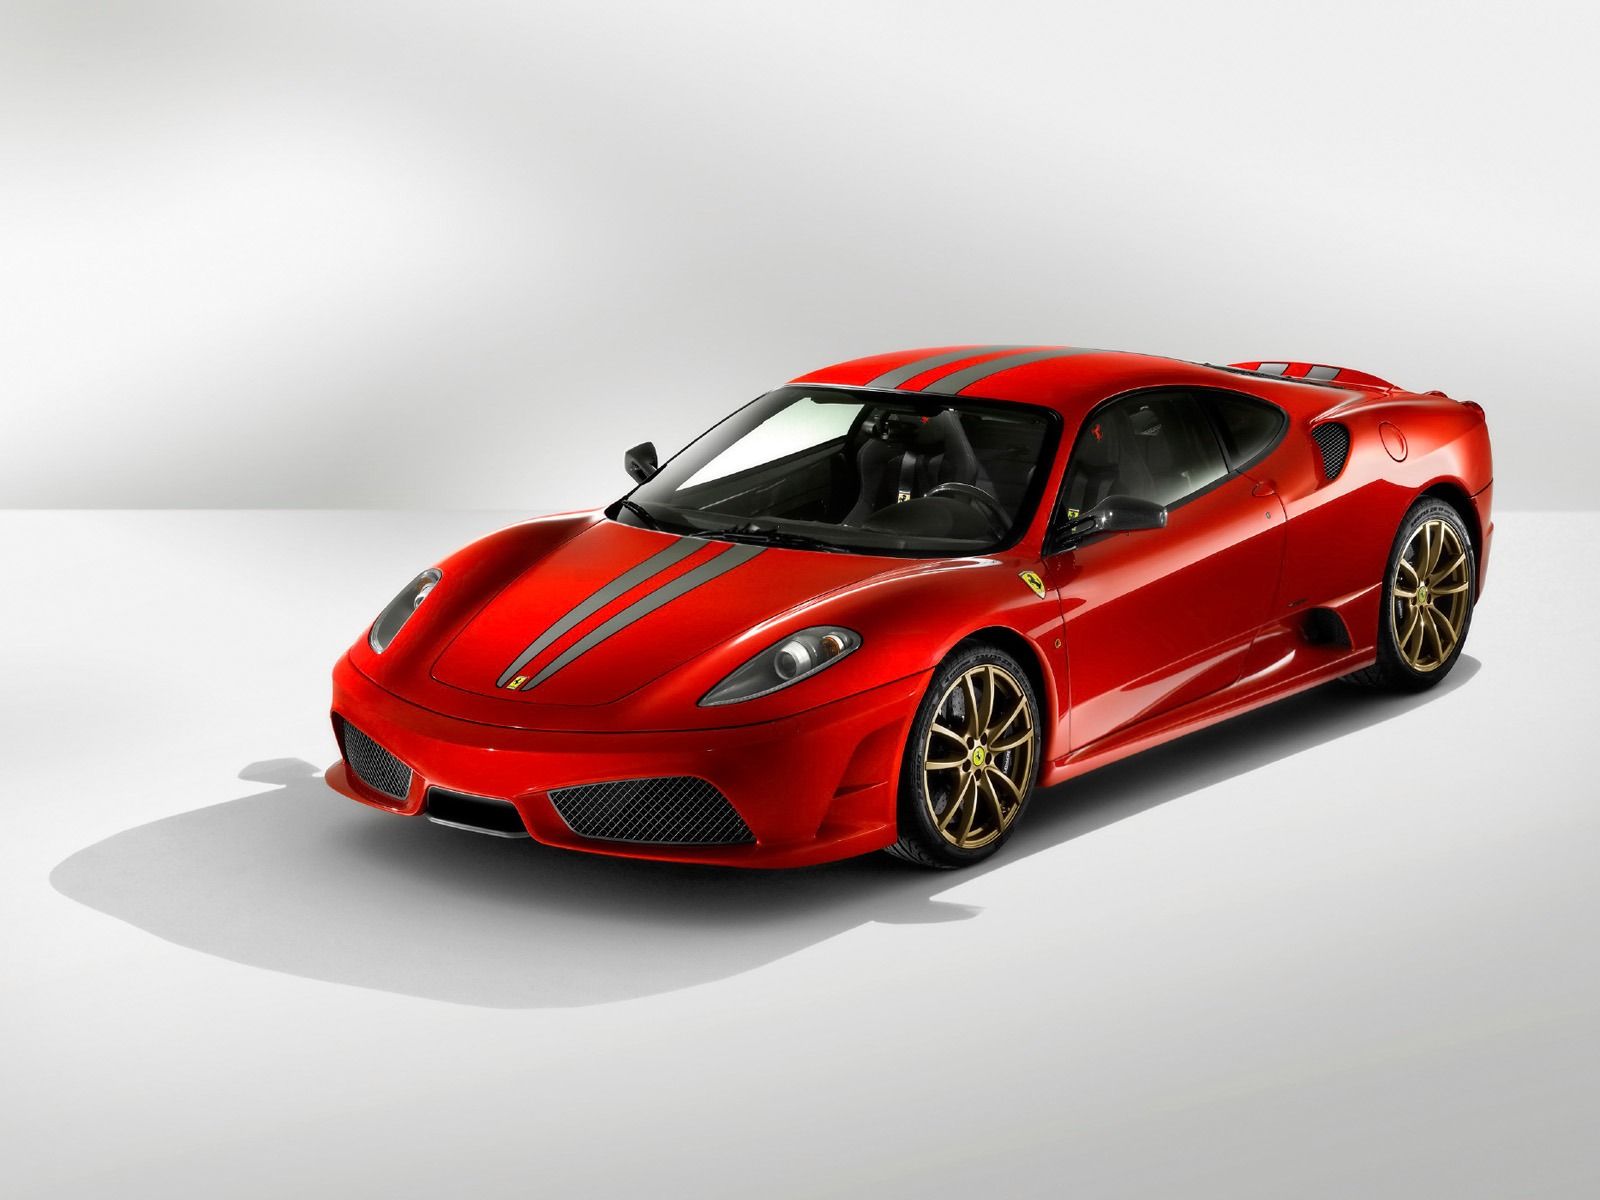 Ferrari Cars Wallpapers Free Download